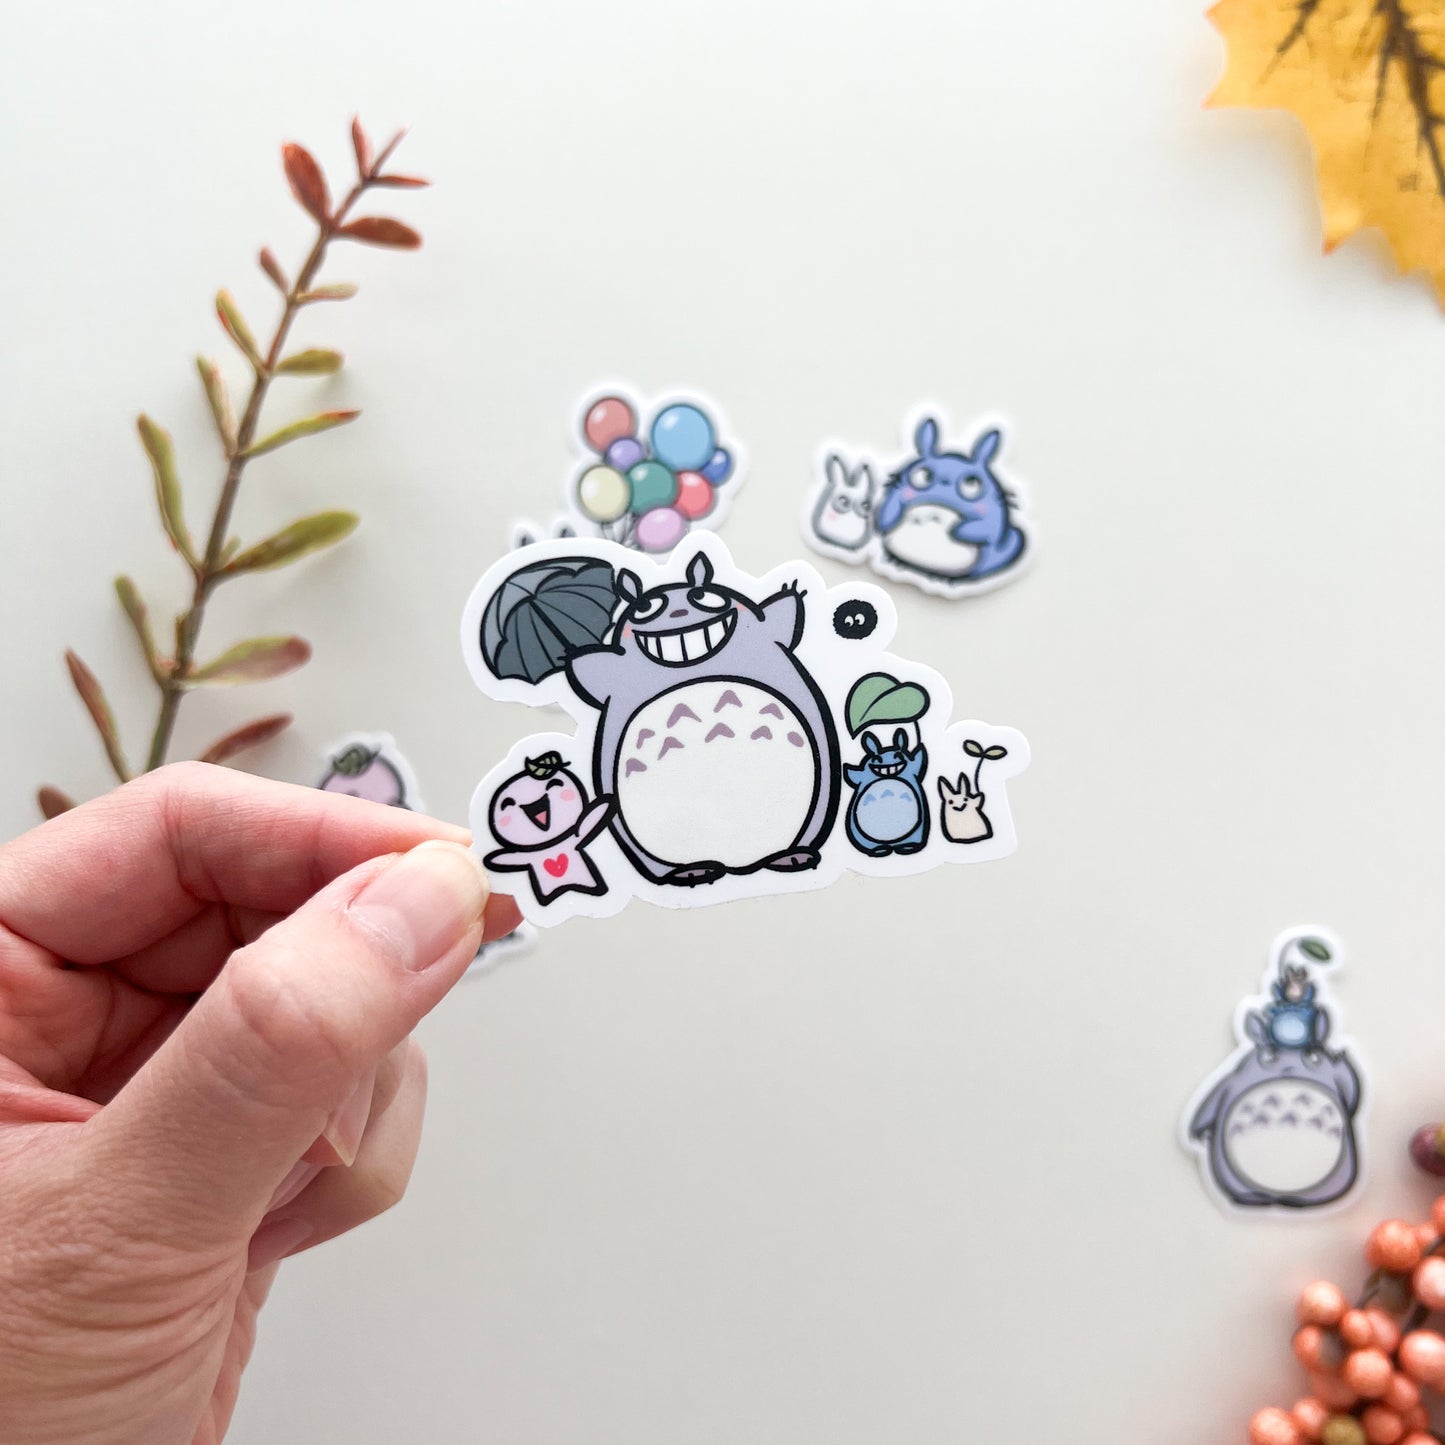 D069 | Buji with Totoro and Friends Vinyl Waterproof Die Cut Sticker | Totoro